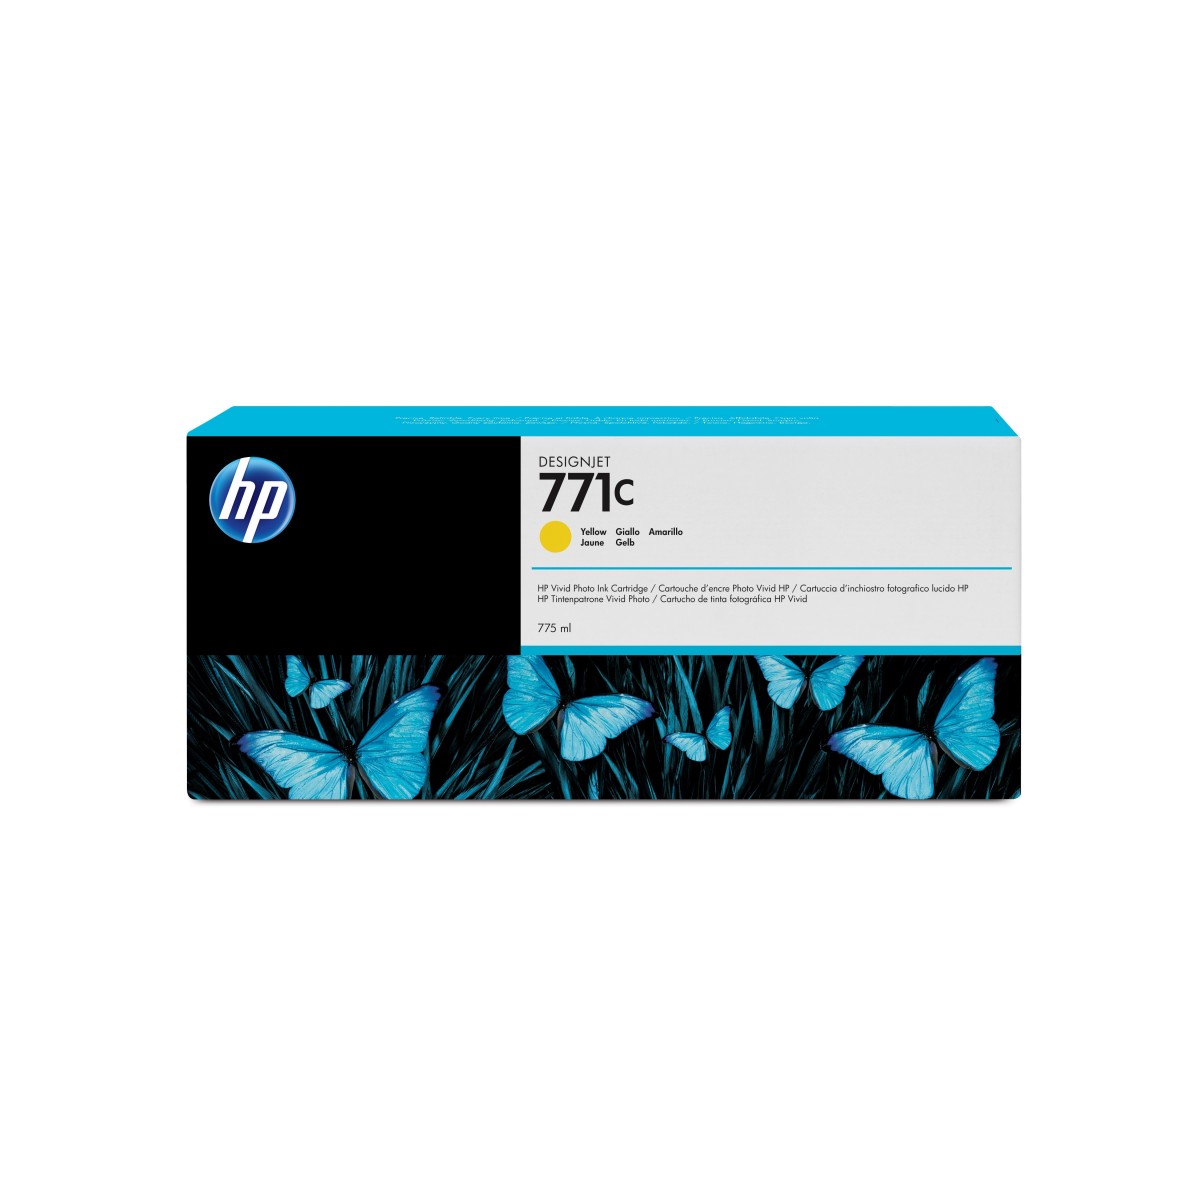 HP DesignJet 771C - Ink Cartridge Original - Yellow - 775 ml